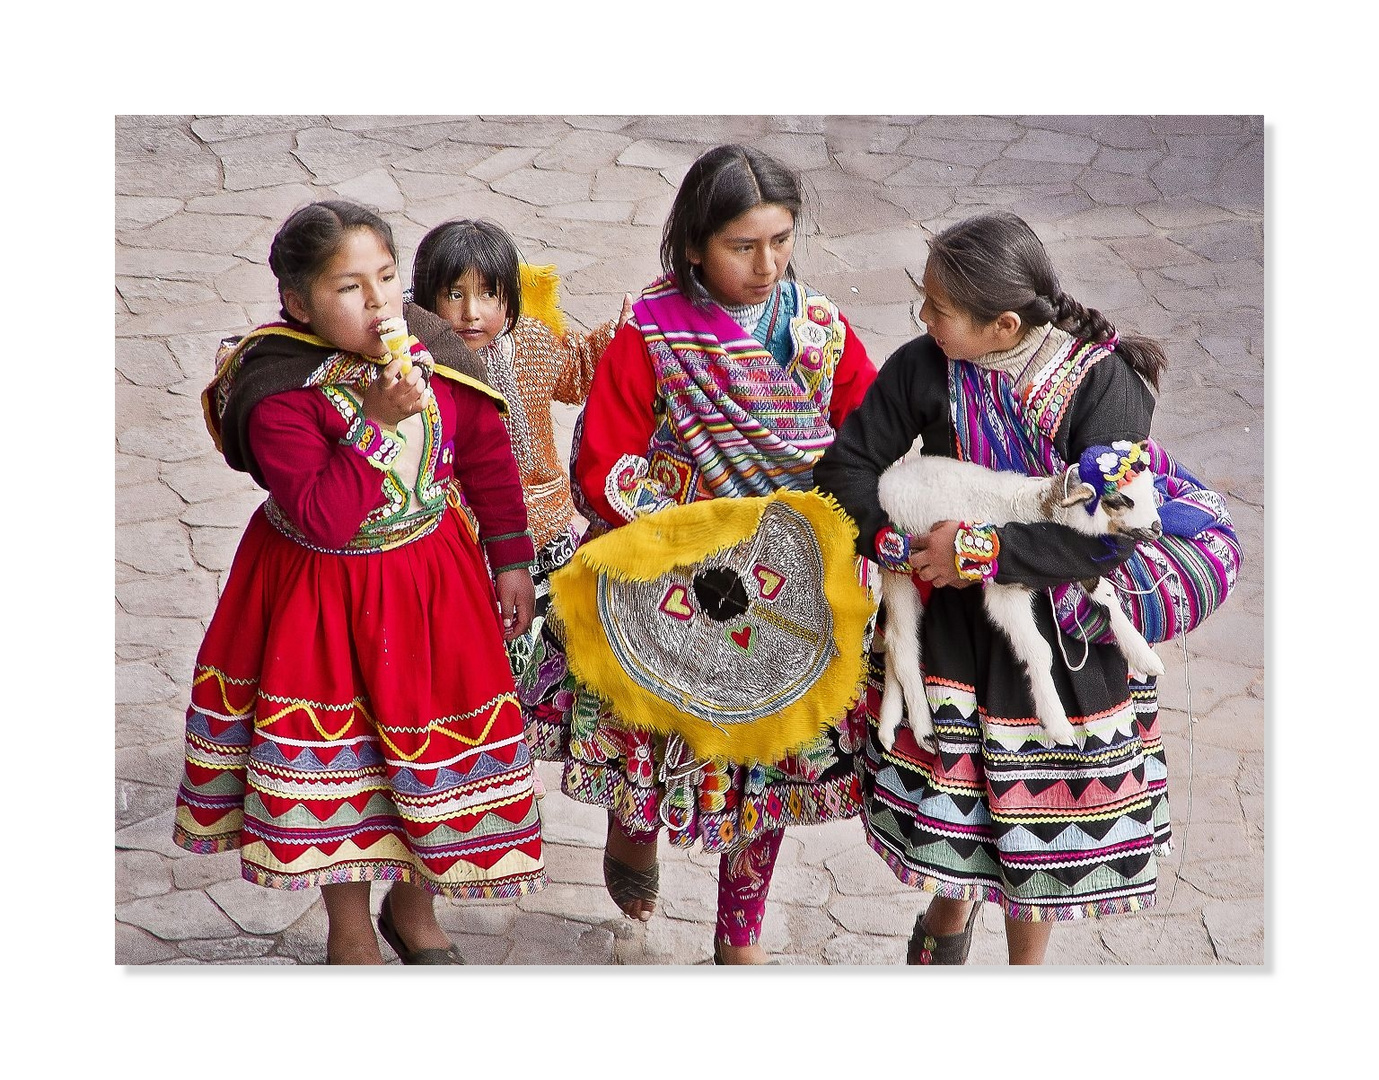 Quechua Indios Kinder mit ihren bunten Faltenröcken